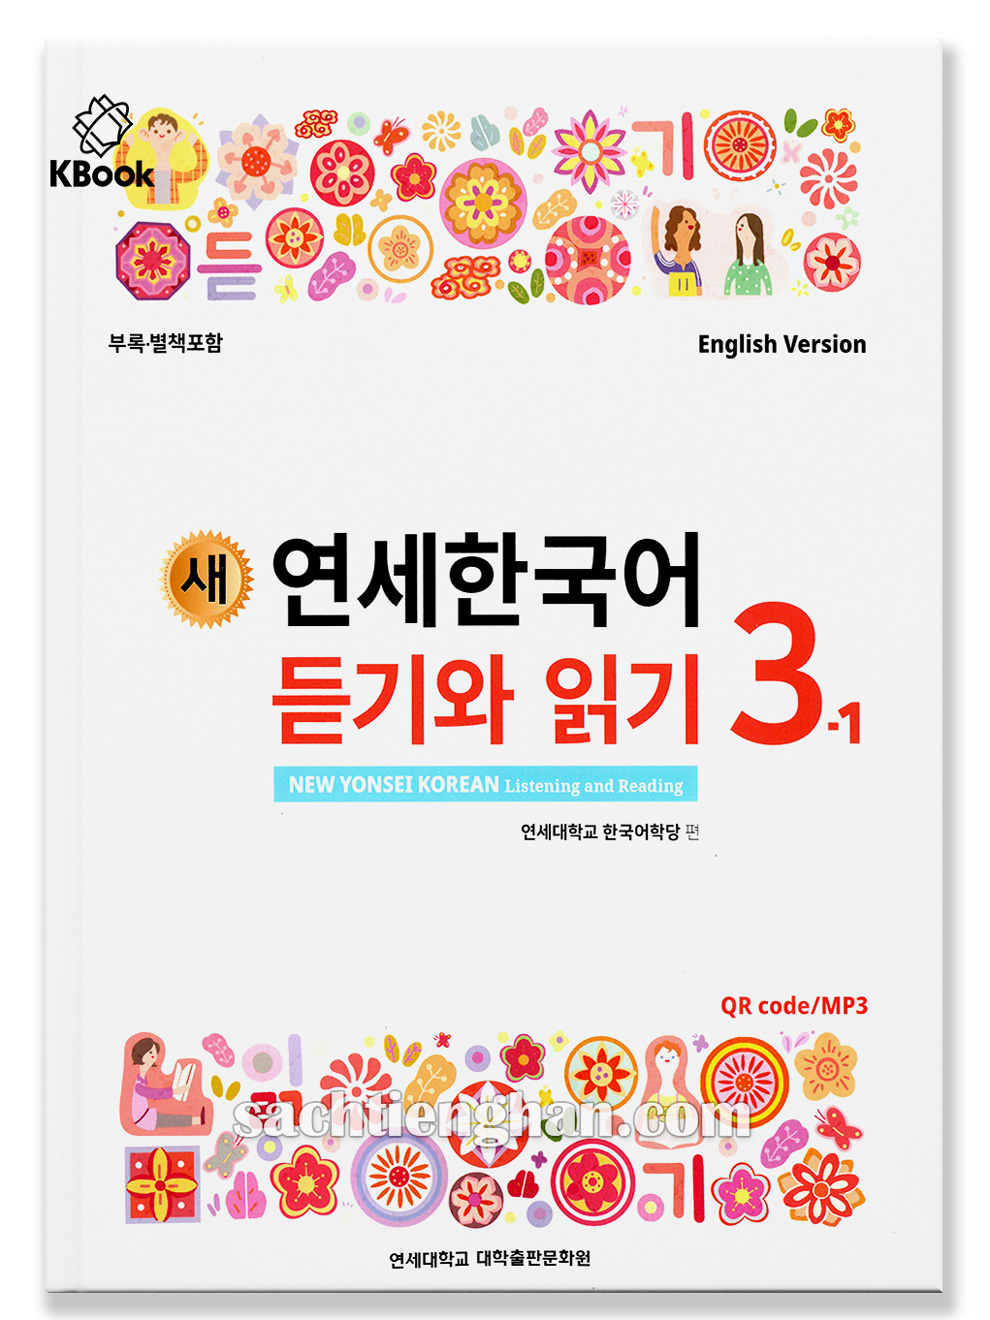 [Sách màu] Giáo trình New Yonsei Korean nghe & đọc - 새 연세한국어 듣기와 읽기 3-1